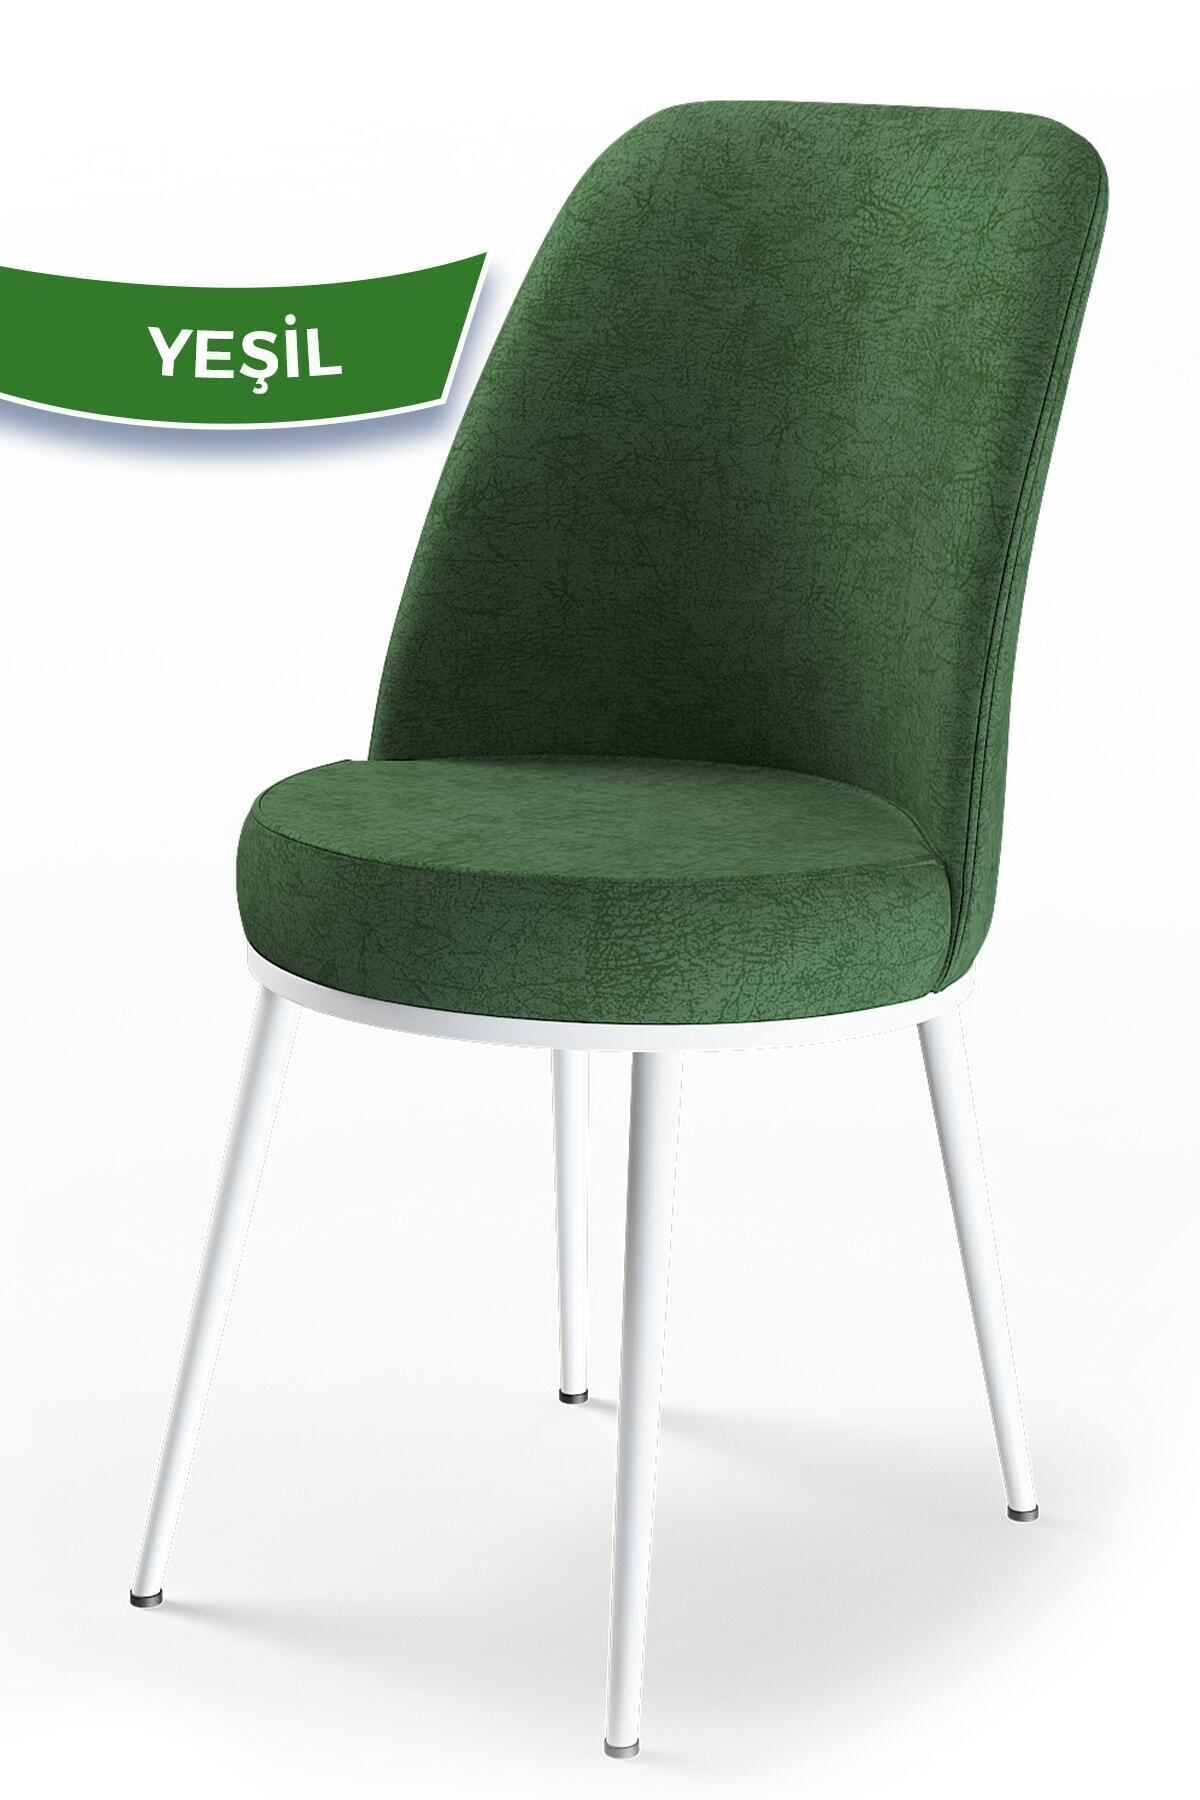 Canisa Concept Dexa Serisi Sandalye, Haki Yeşil Sandalye Beyaz Ayak